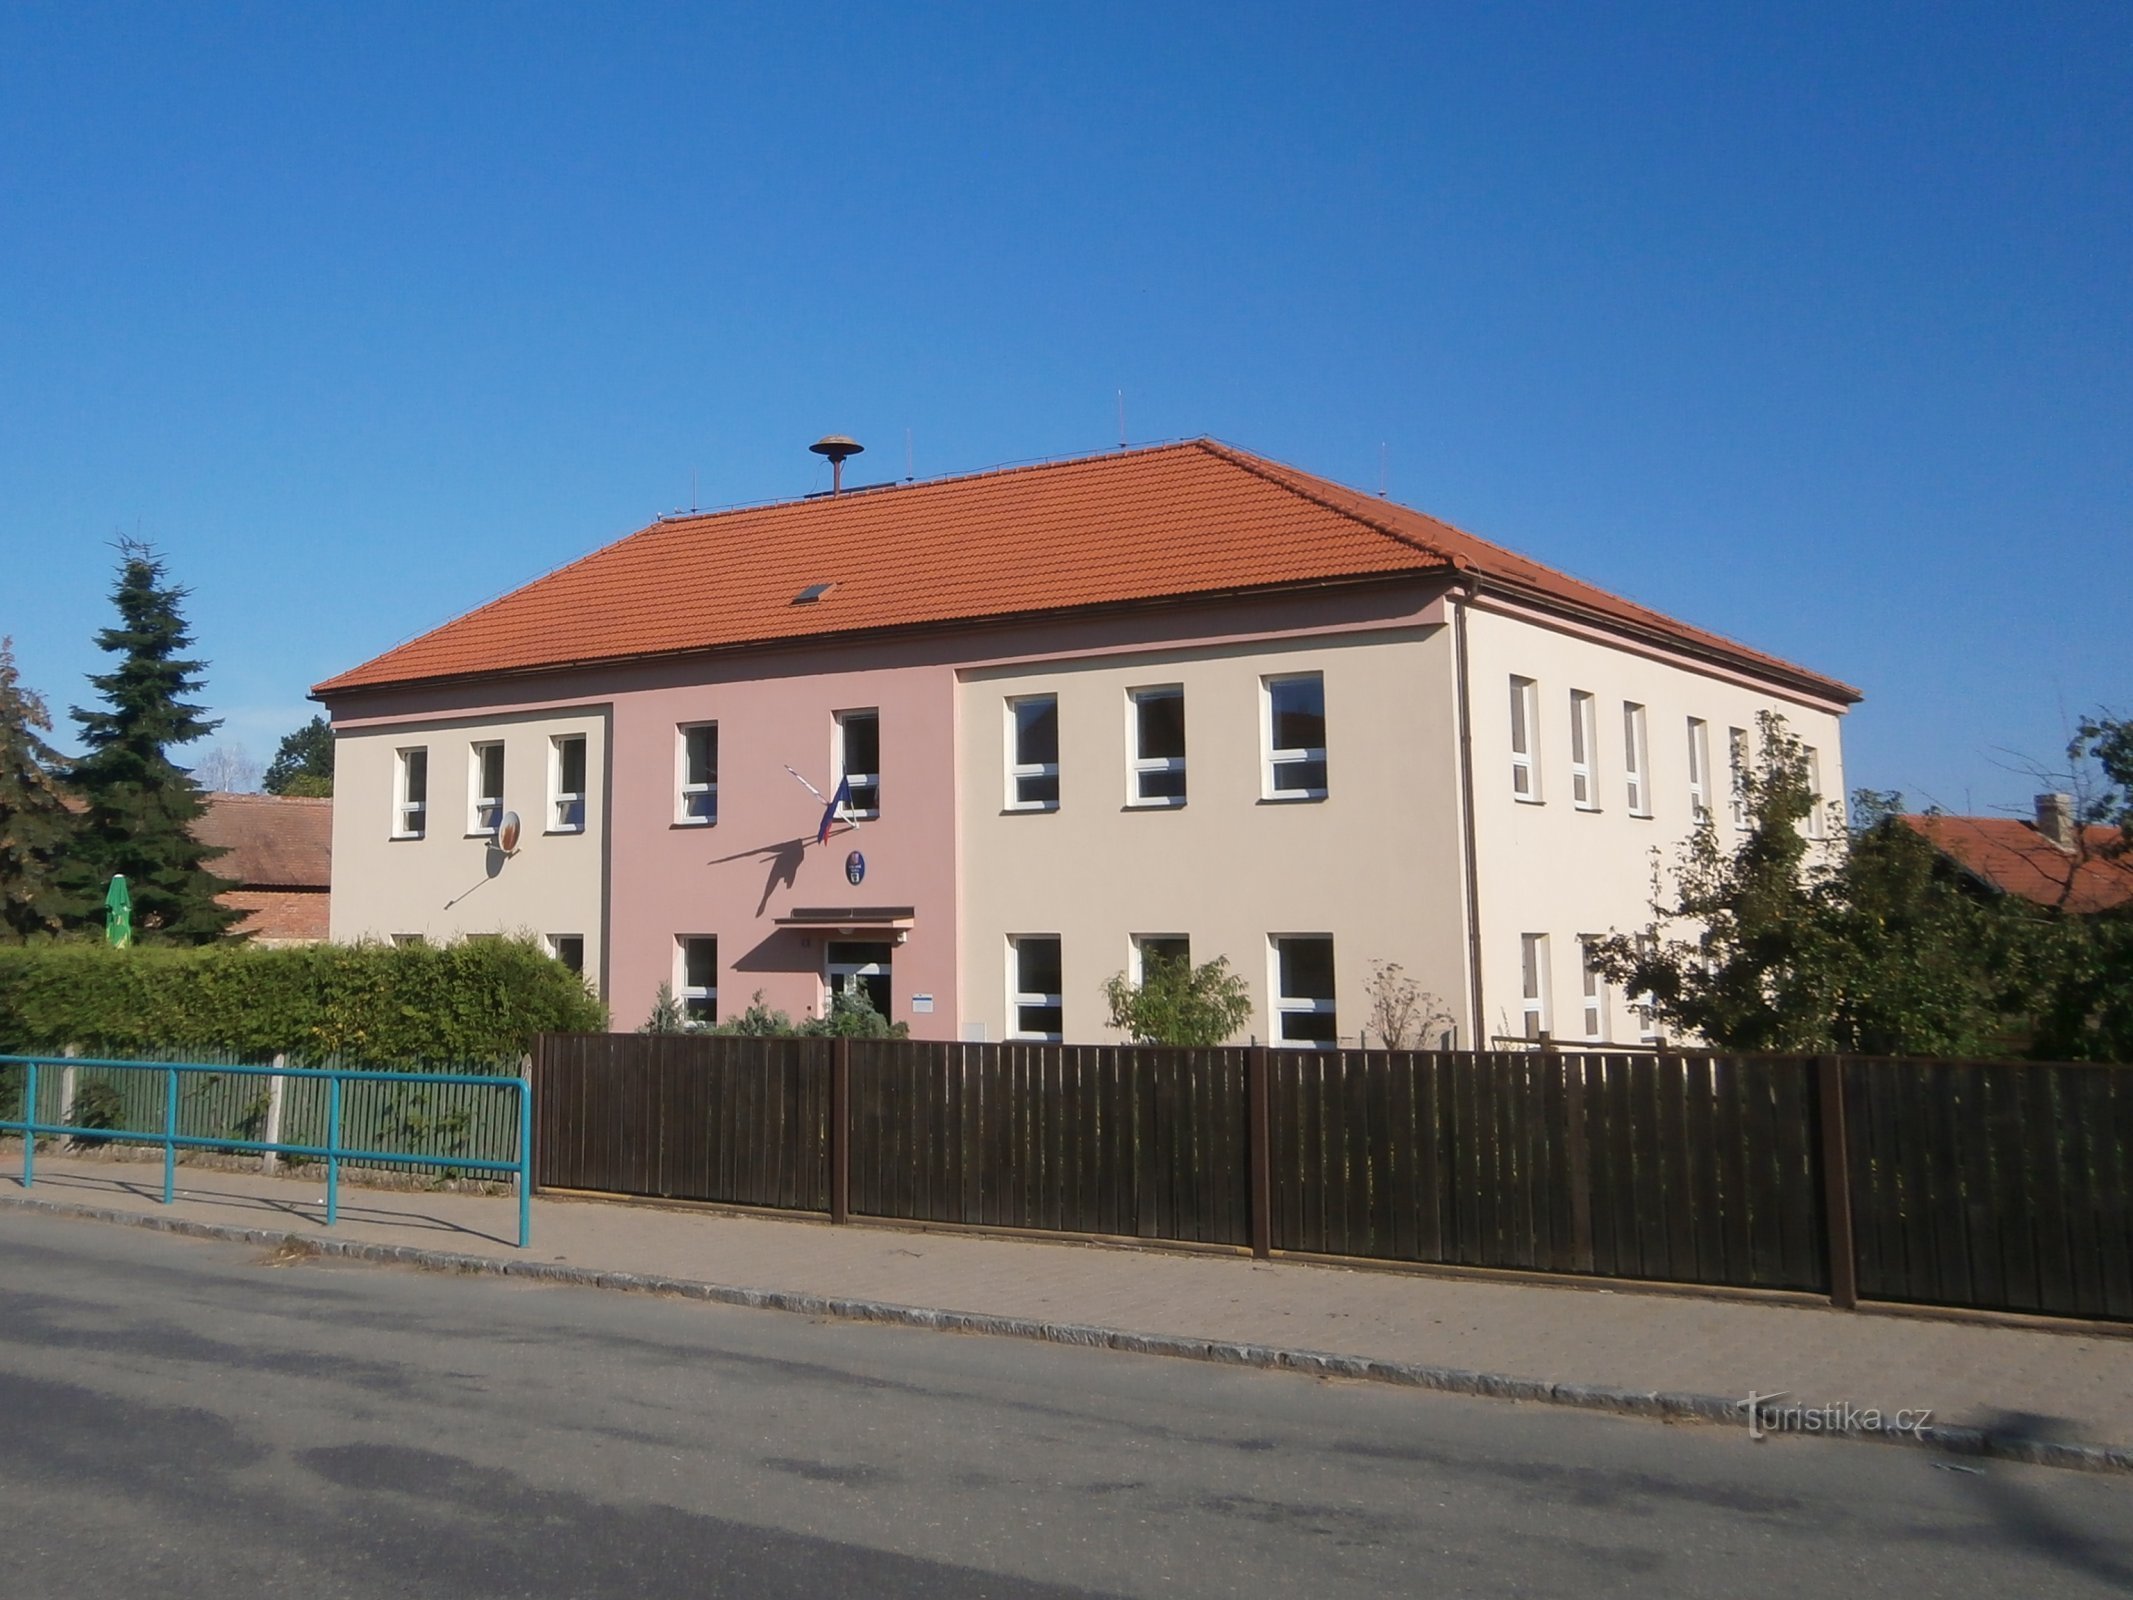 Škola (Staré Ždánice, 30.7.2017.)